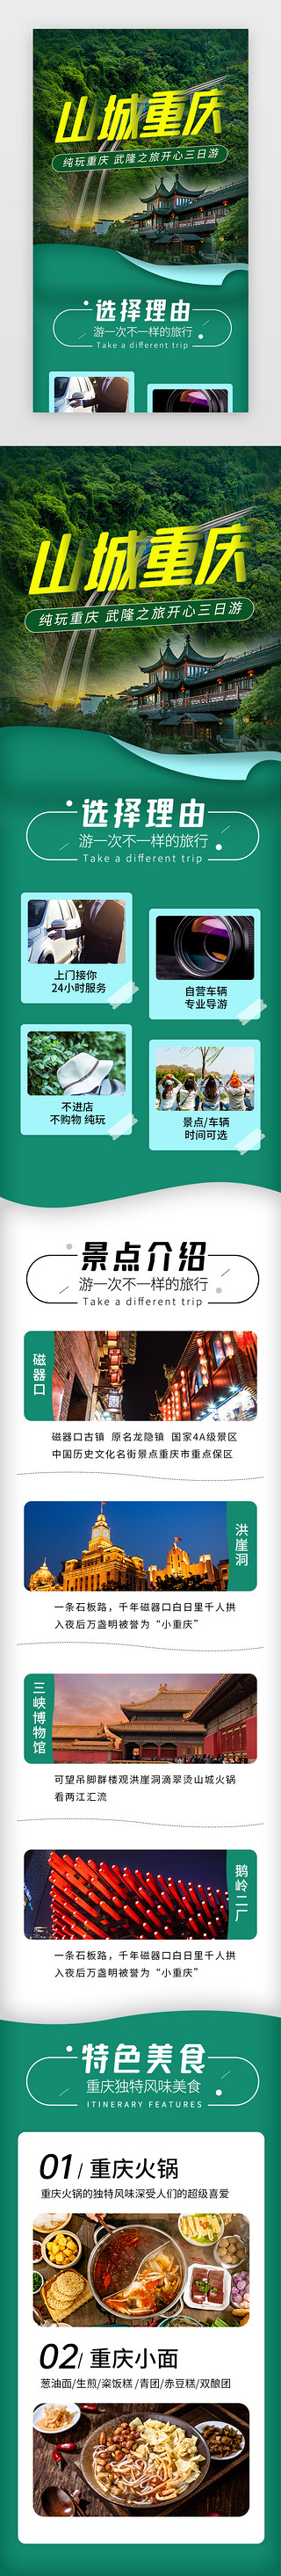 中国重庆UI设计素材_山城重庆旅游景点介绍H5长图